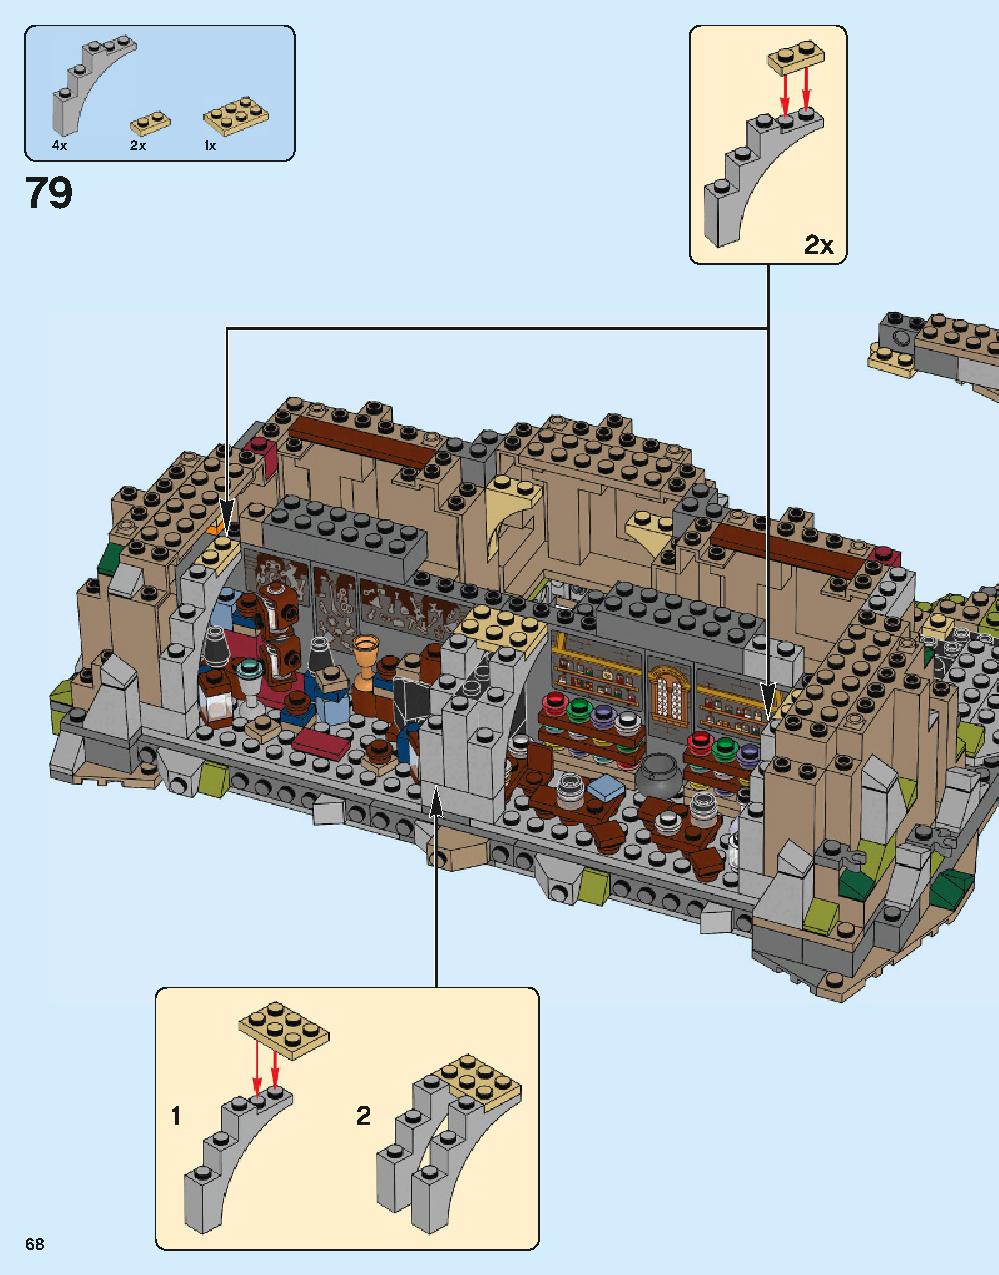 ホグワーツ城 71043 レゴの商品情報 レゴの説明書・組立方法 68 page